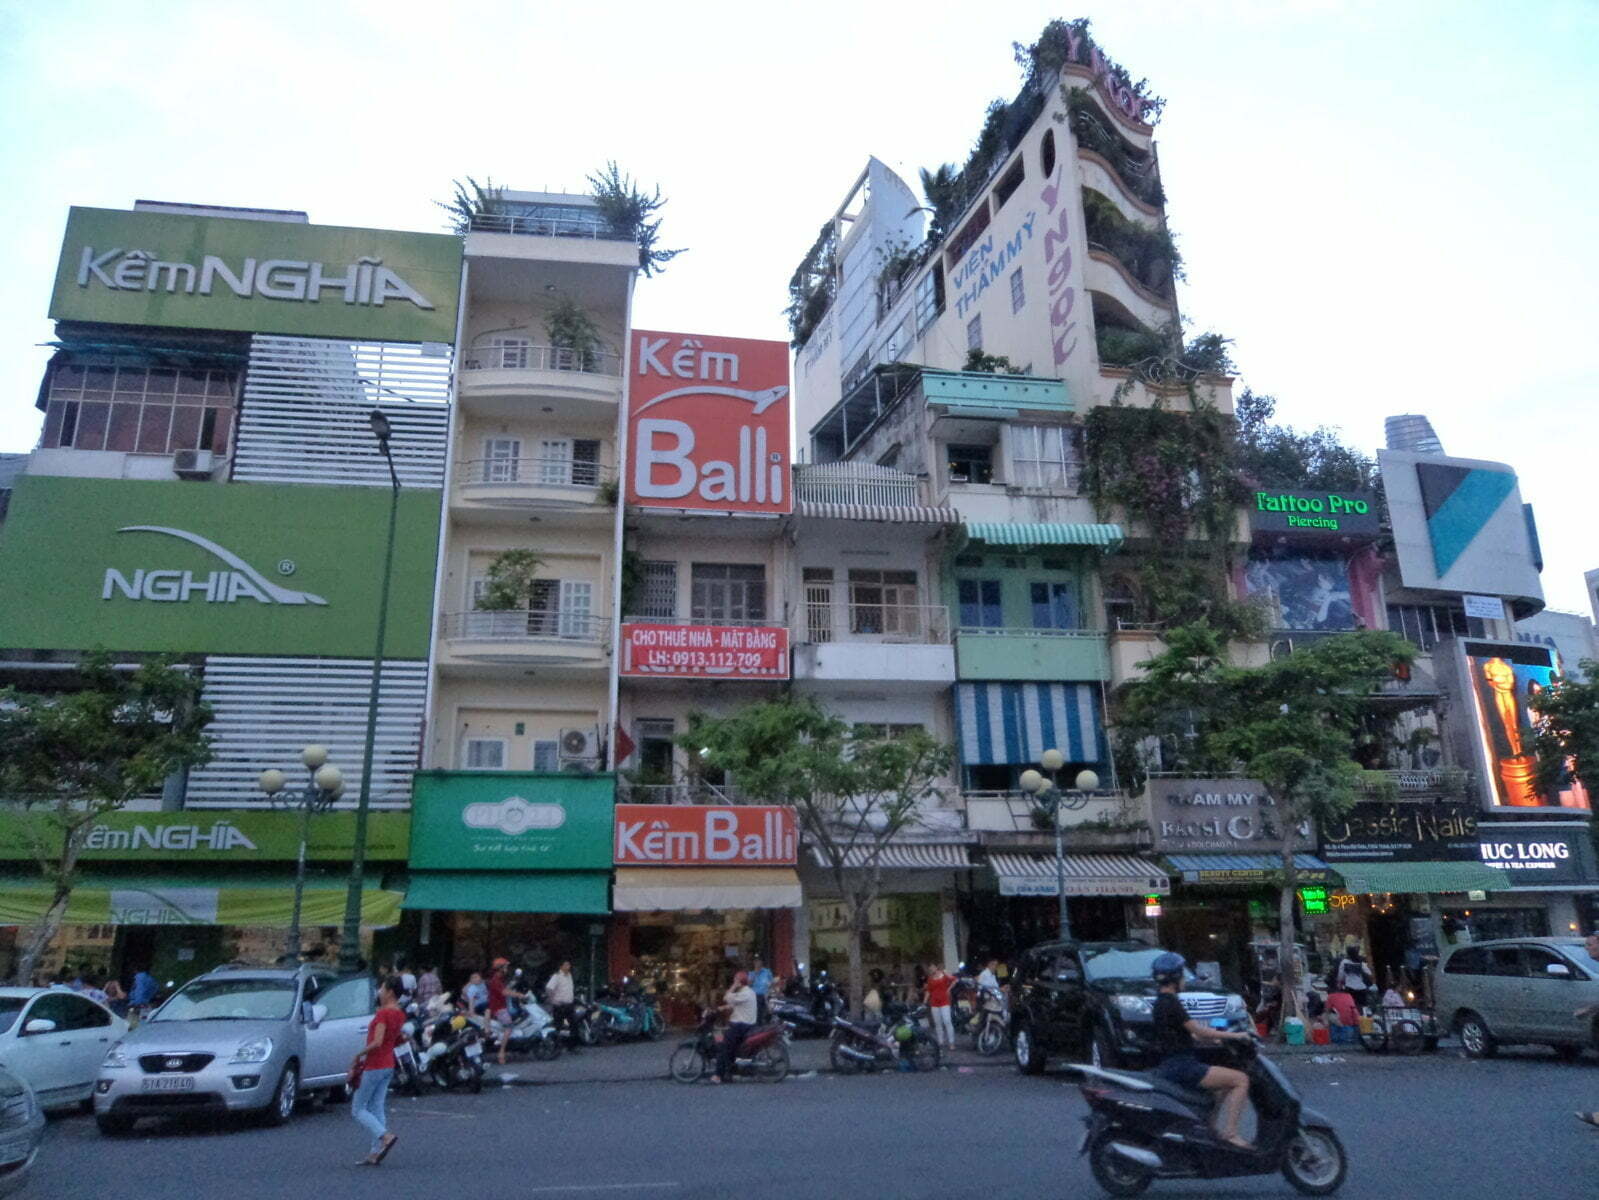 Imóveis altos e estreitos aproveitando cada pedaço de terreno - Ho Chi Minh, Vietnã